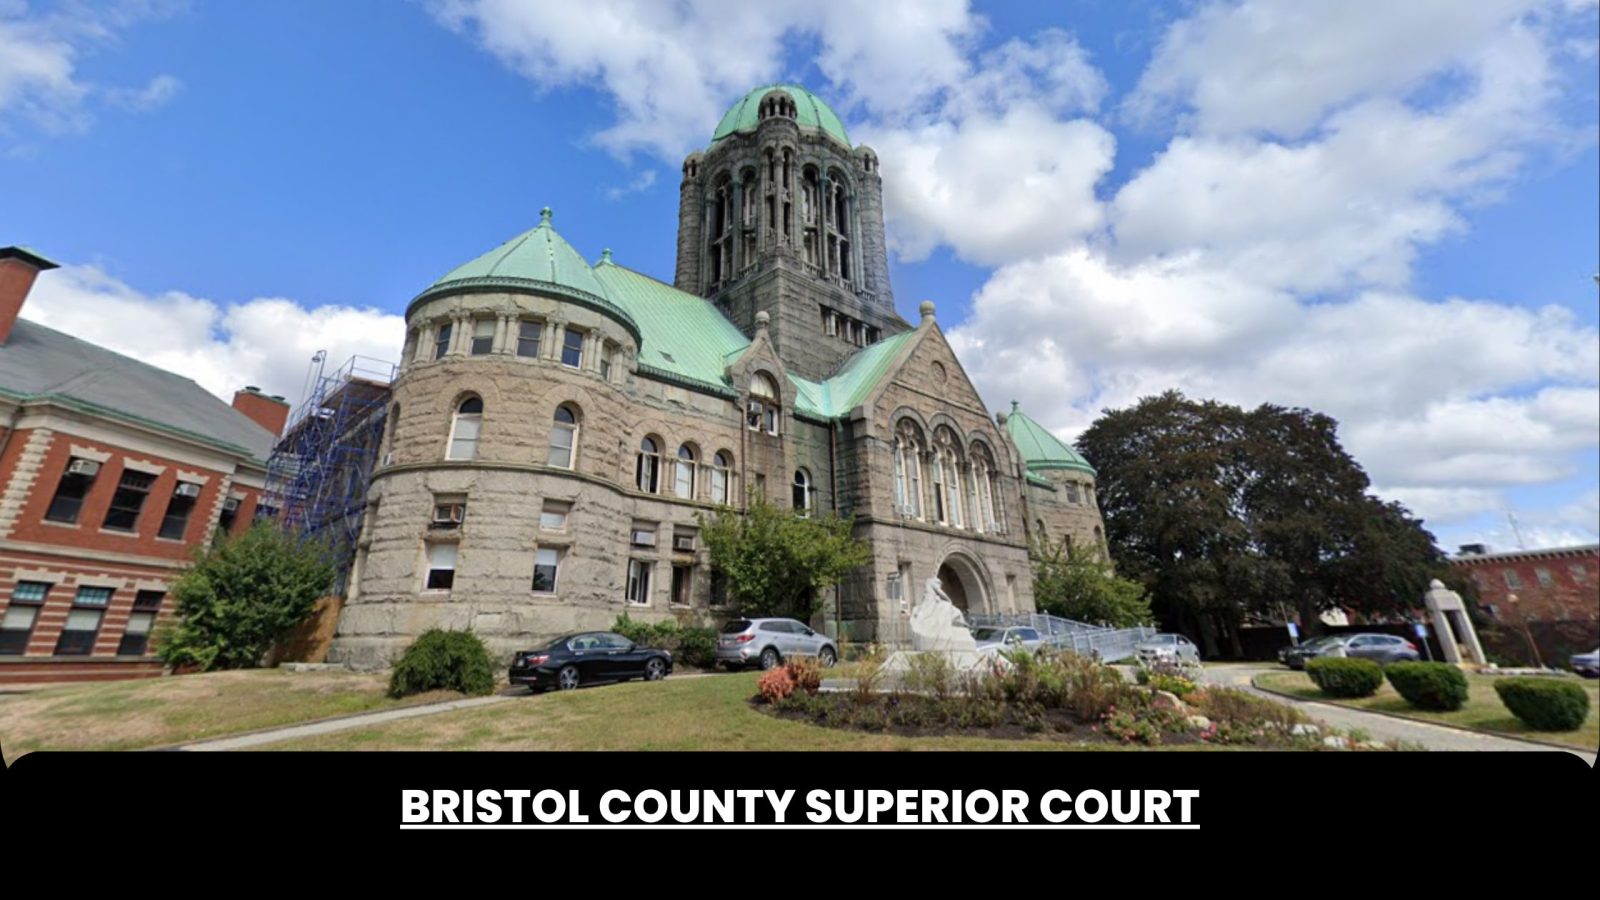 Bristol County Superior Court